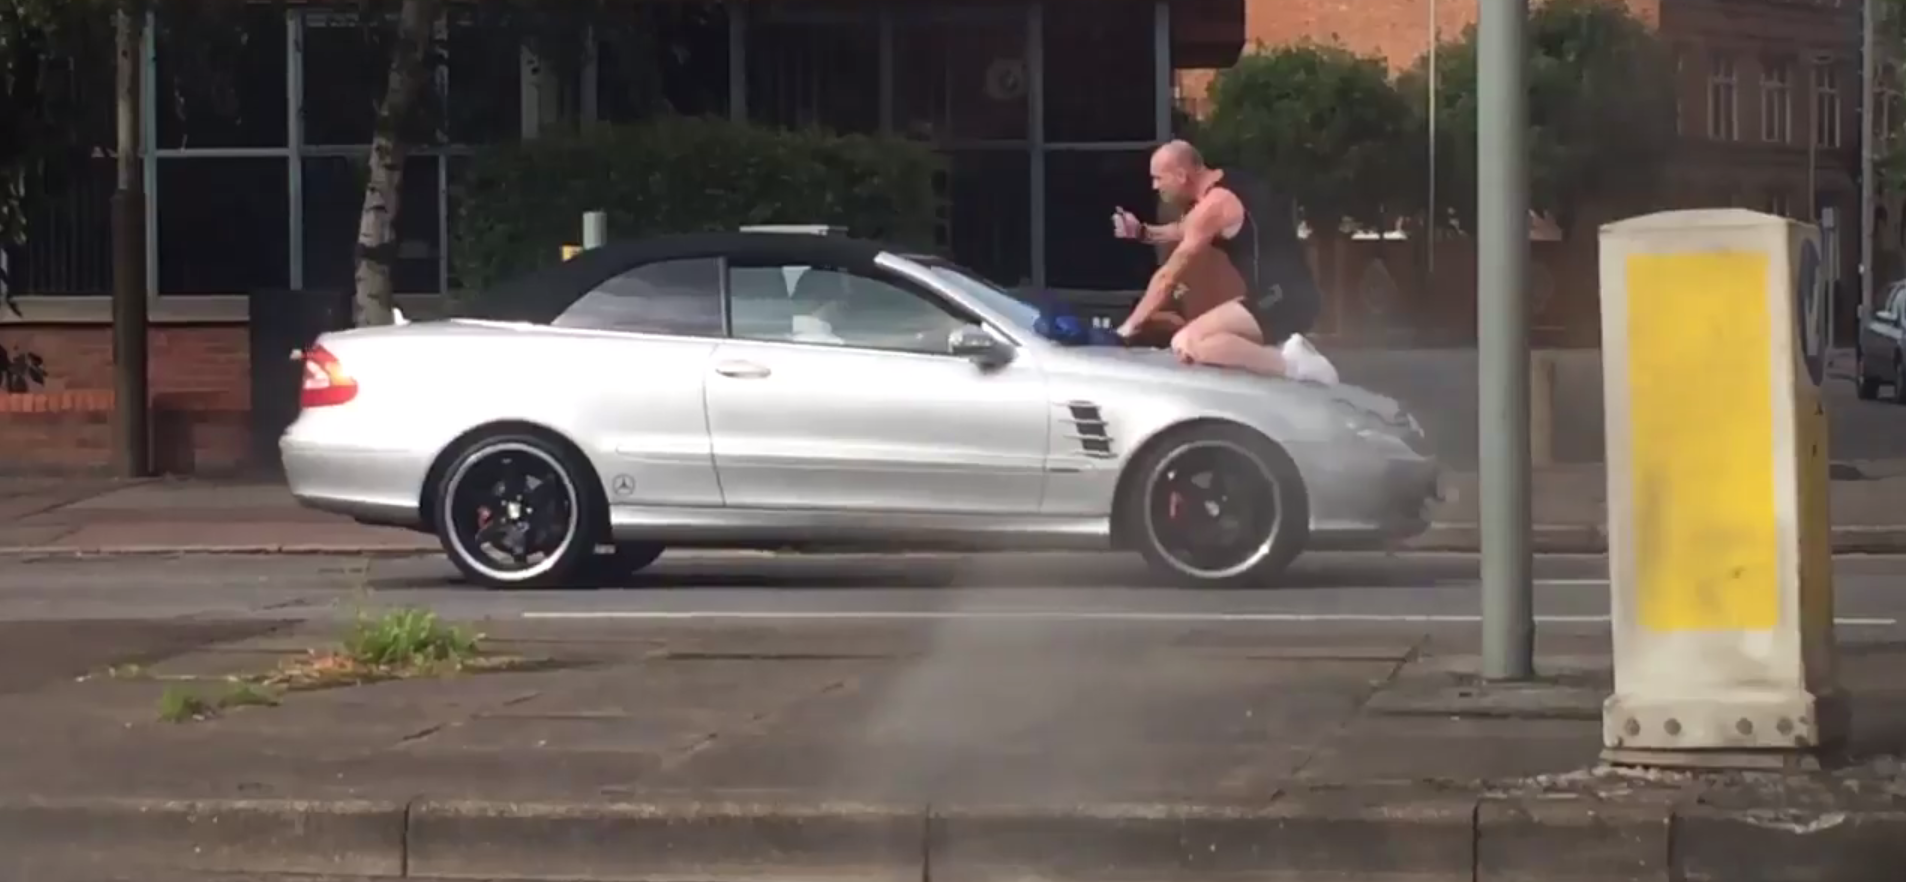 Ember-autó-bokszmeccset rendeztek az utcán, a kocsi legyőzte az ideggyenge kopaszt